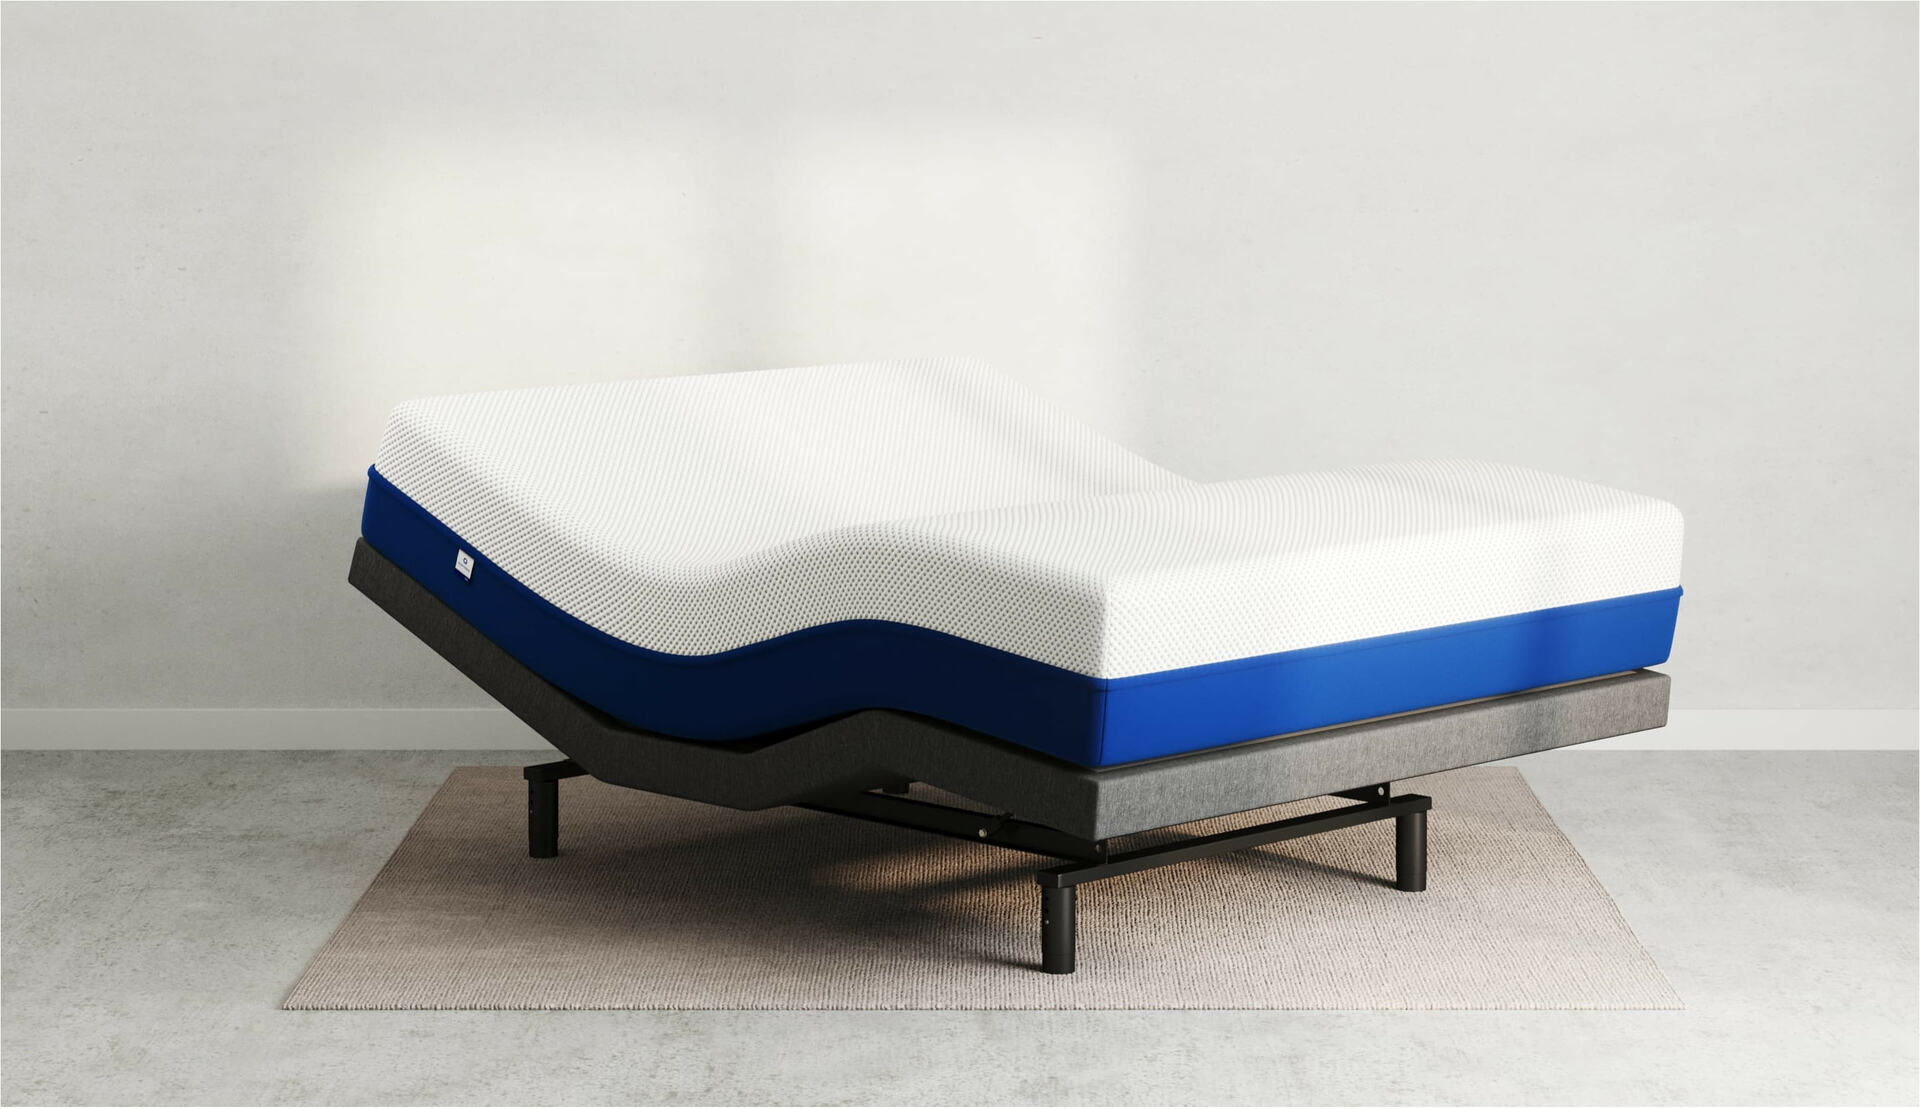 as3 hybrid mattress review